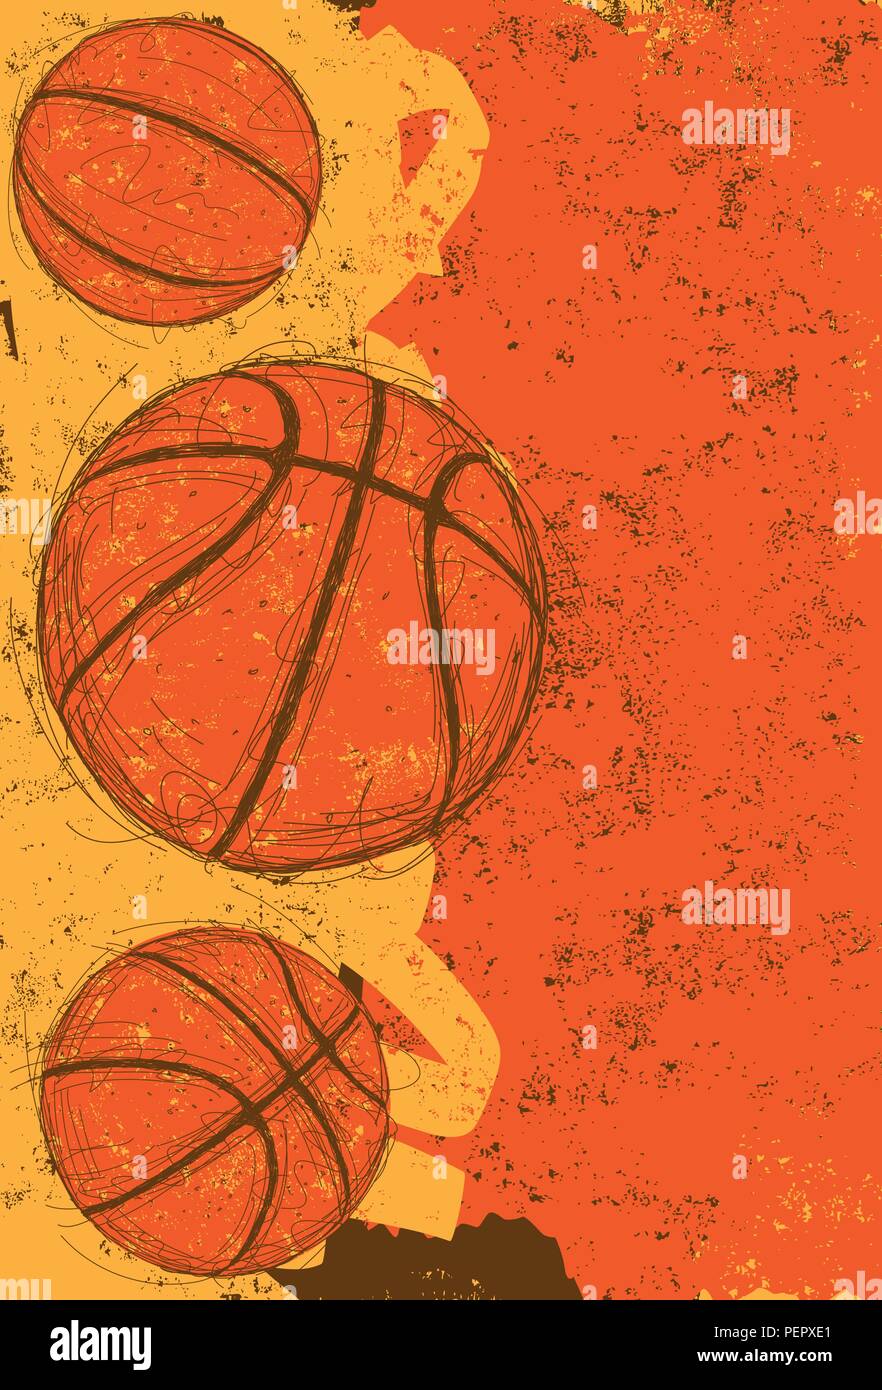 Drei Basketbälle. Sketchy, hand Basketbälle über einen abstrakten Hintergrund dargestellt. Stock Vektor